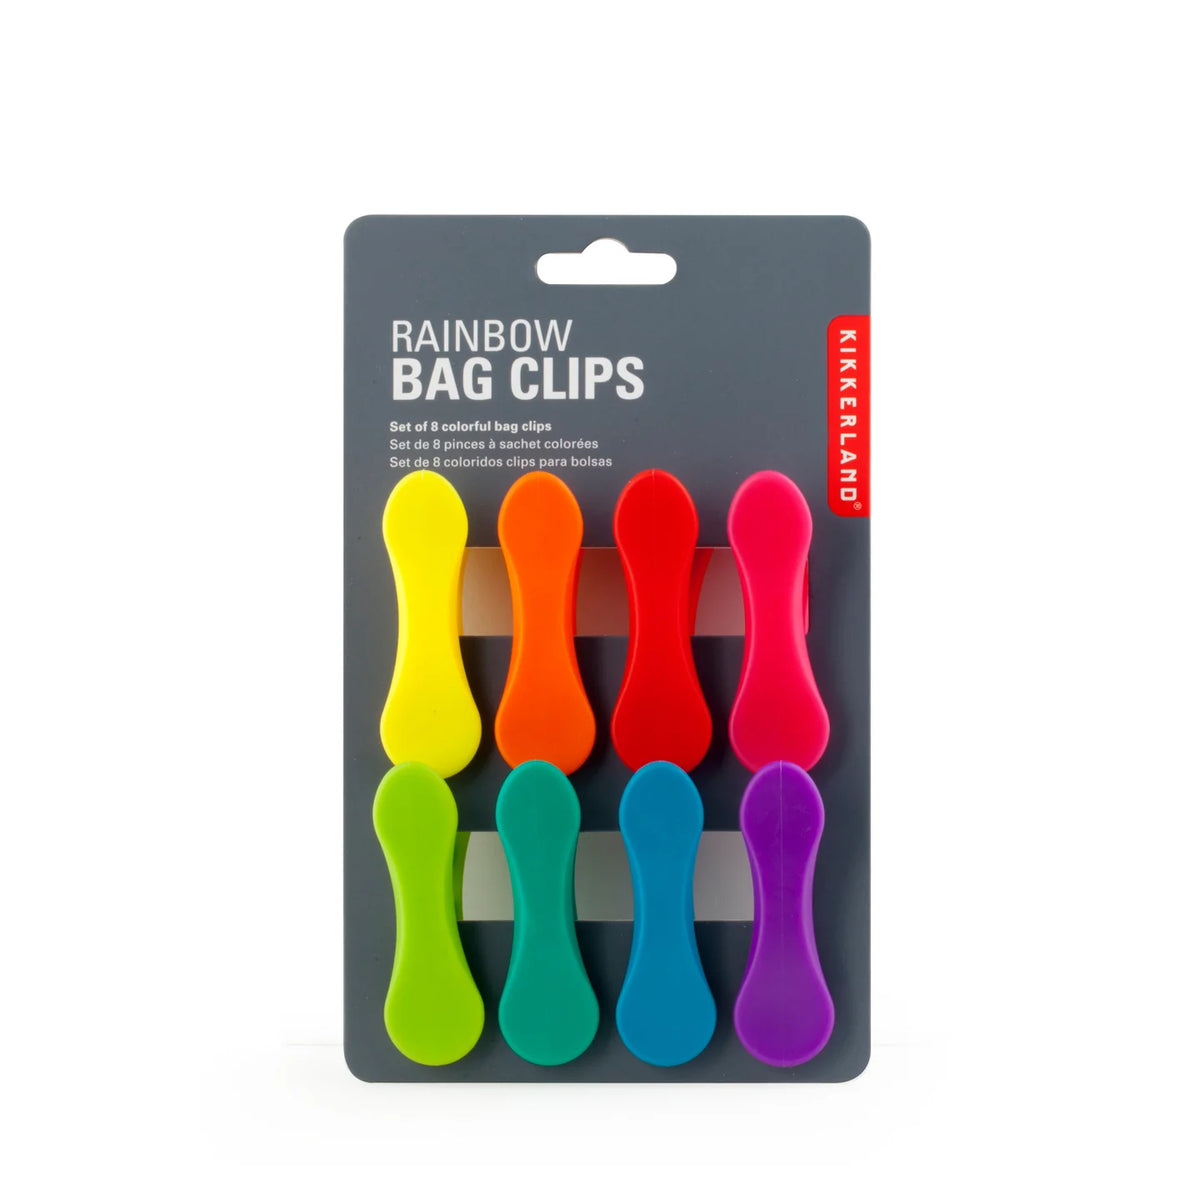 Rainbow Bag Clips set8